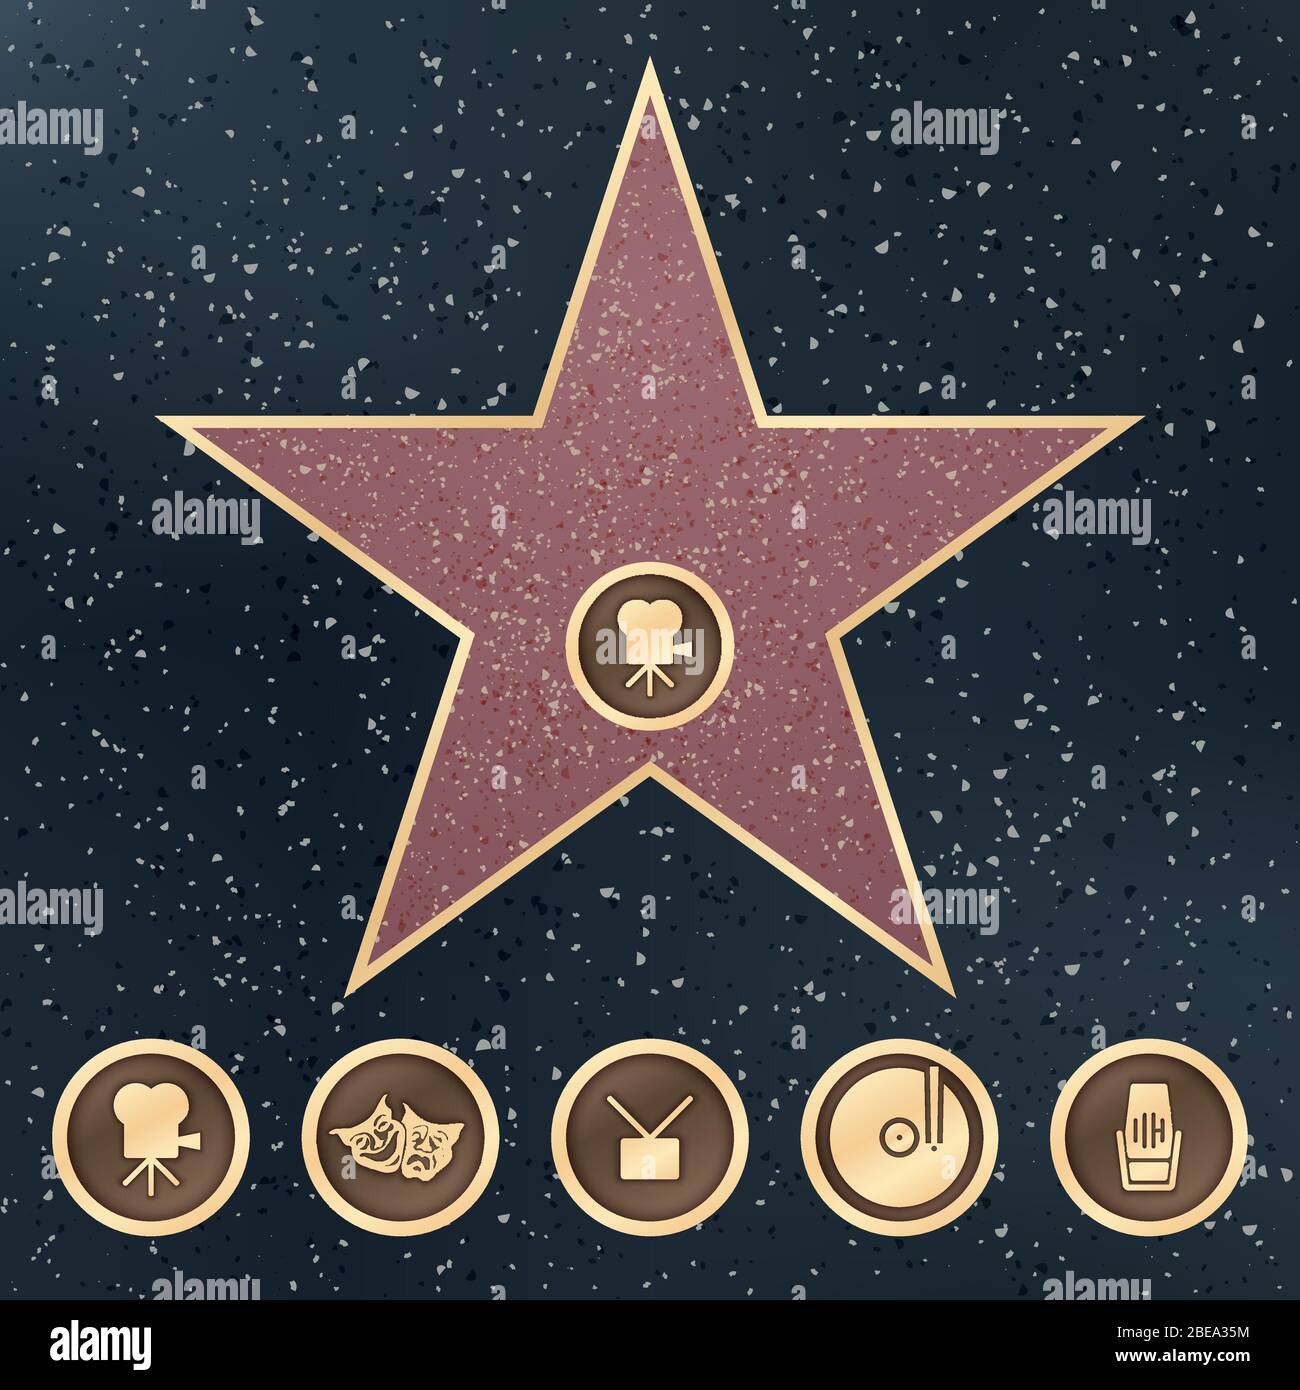 Marchez sur le panneau en granit Star de renommée avec Hollywood Film Academy catégories icônes vectorielles. Illustration de la renommée de promenade sur le trottoir, célèbre étoile et populaire Illustration de Vecteur